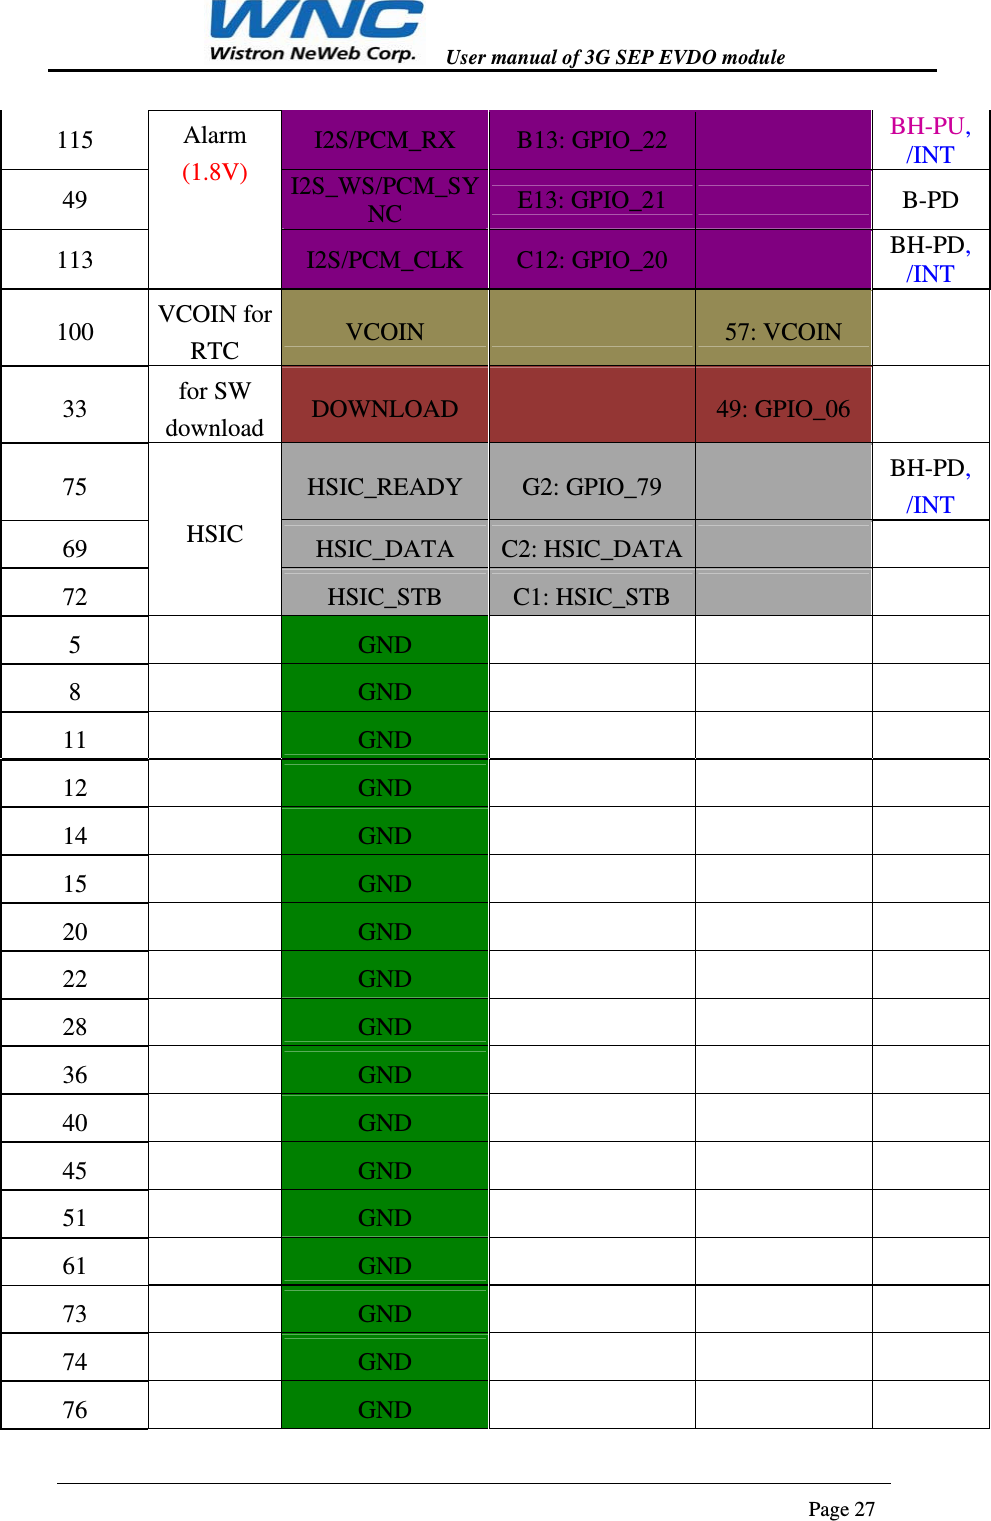   User manual of 3G SEP EVDO module                                                                      Page 27  115  Alarm (1.8V) I2S/PCM_RX  B13: GPIO_22    BH-PU, /INT 49  I2S_WS/PCM_SYNC  E13: GPIO_21    B-PD 113  I2S/PCM_CLK  C12: GPIO_20    BH-PD, /INT 100  VCOIN for RTC  VCOIN    57: VCOIN    33  for SW download  DOWNLOAD    49: GPIO_06    75 HSIC HSIC_READY  G2: GPIO_79    BH-PD, /INT 69  HSIC_DATA  C2: HSIC_DATA     72  HSIC_STB  C1: HSIC_STB      5    GND        8    GND        11    GND        12    GND        14    GND        15    GND        20    GND        22    GND        28    GND        36    GND        40    GND        45    GND        51    GND        61    GND        73    GND        74    GND        76    GND        